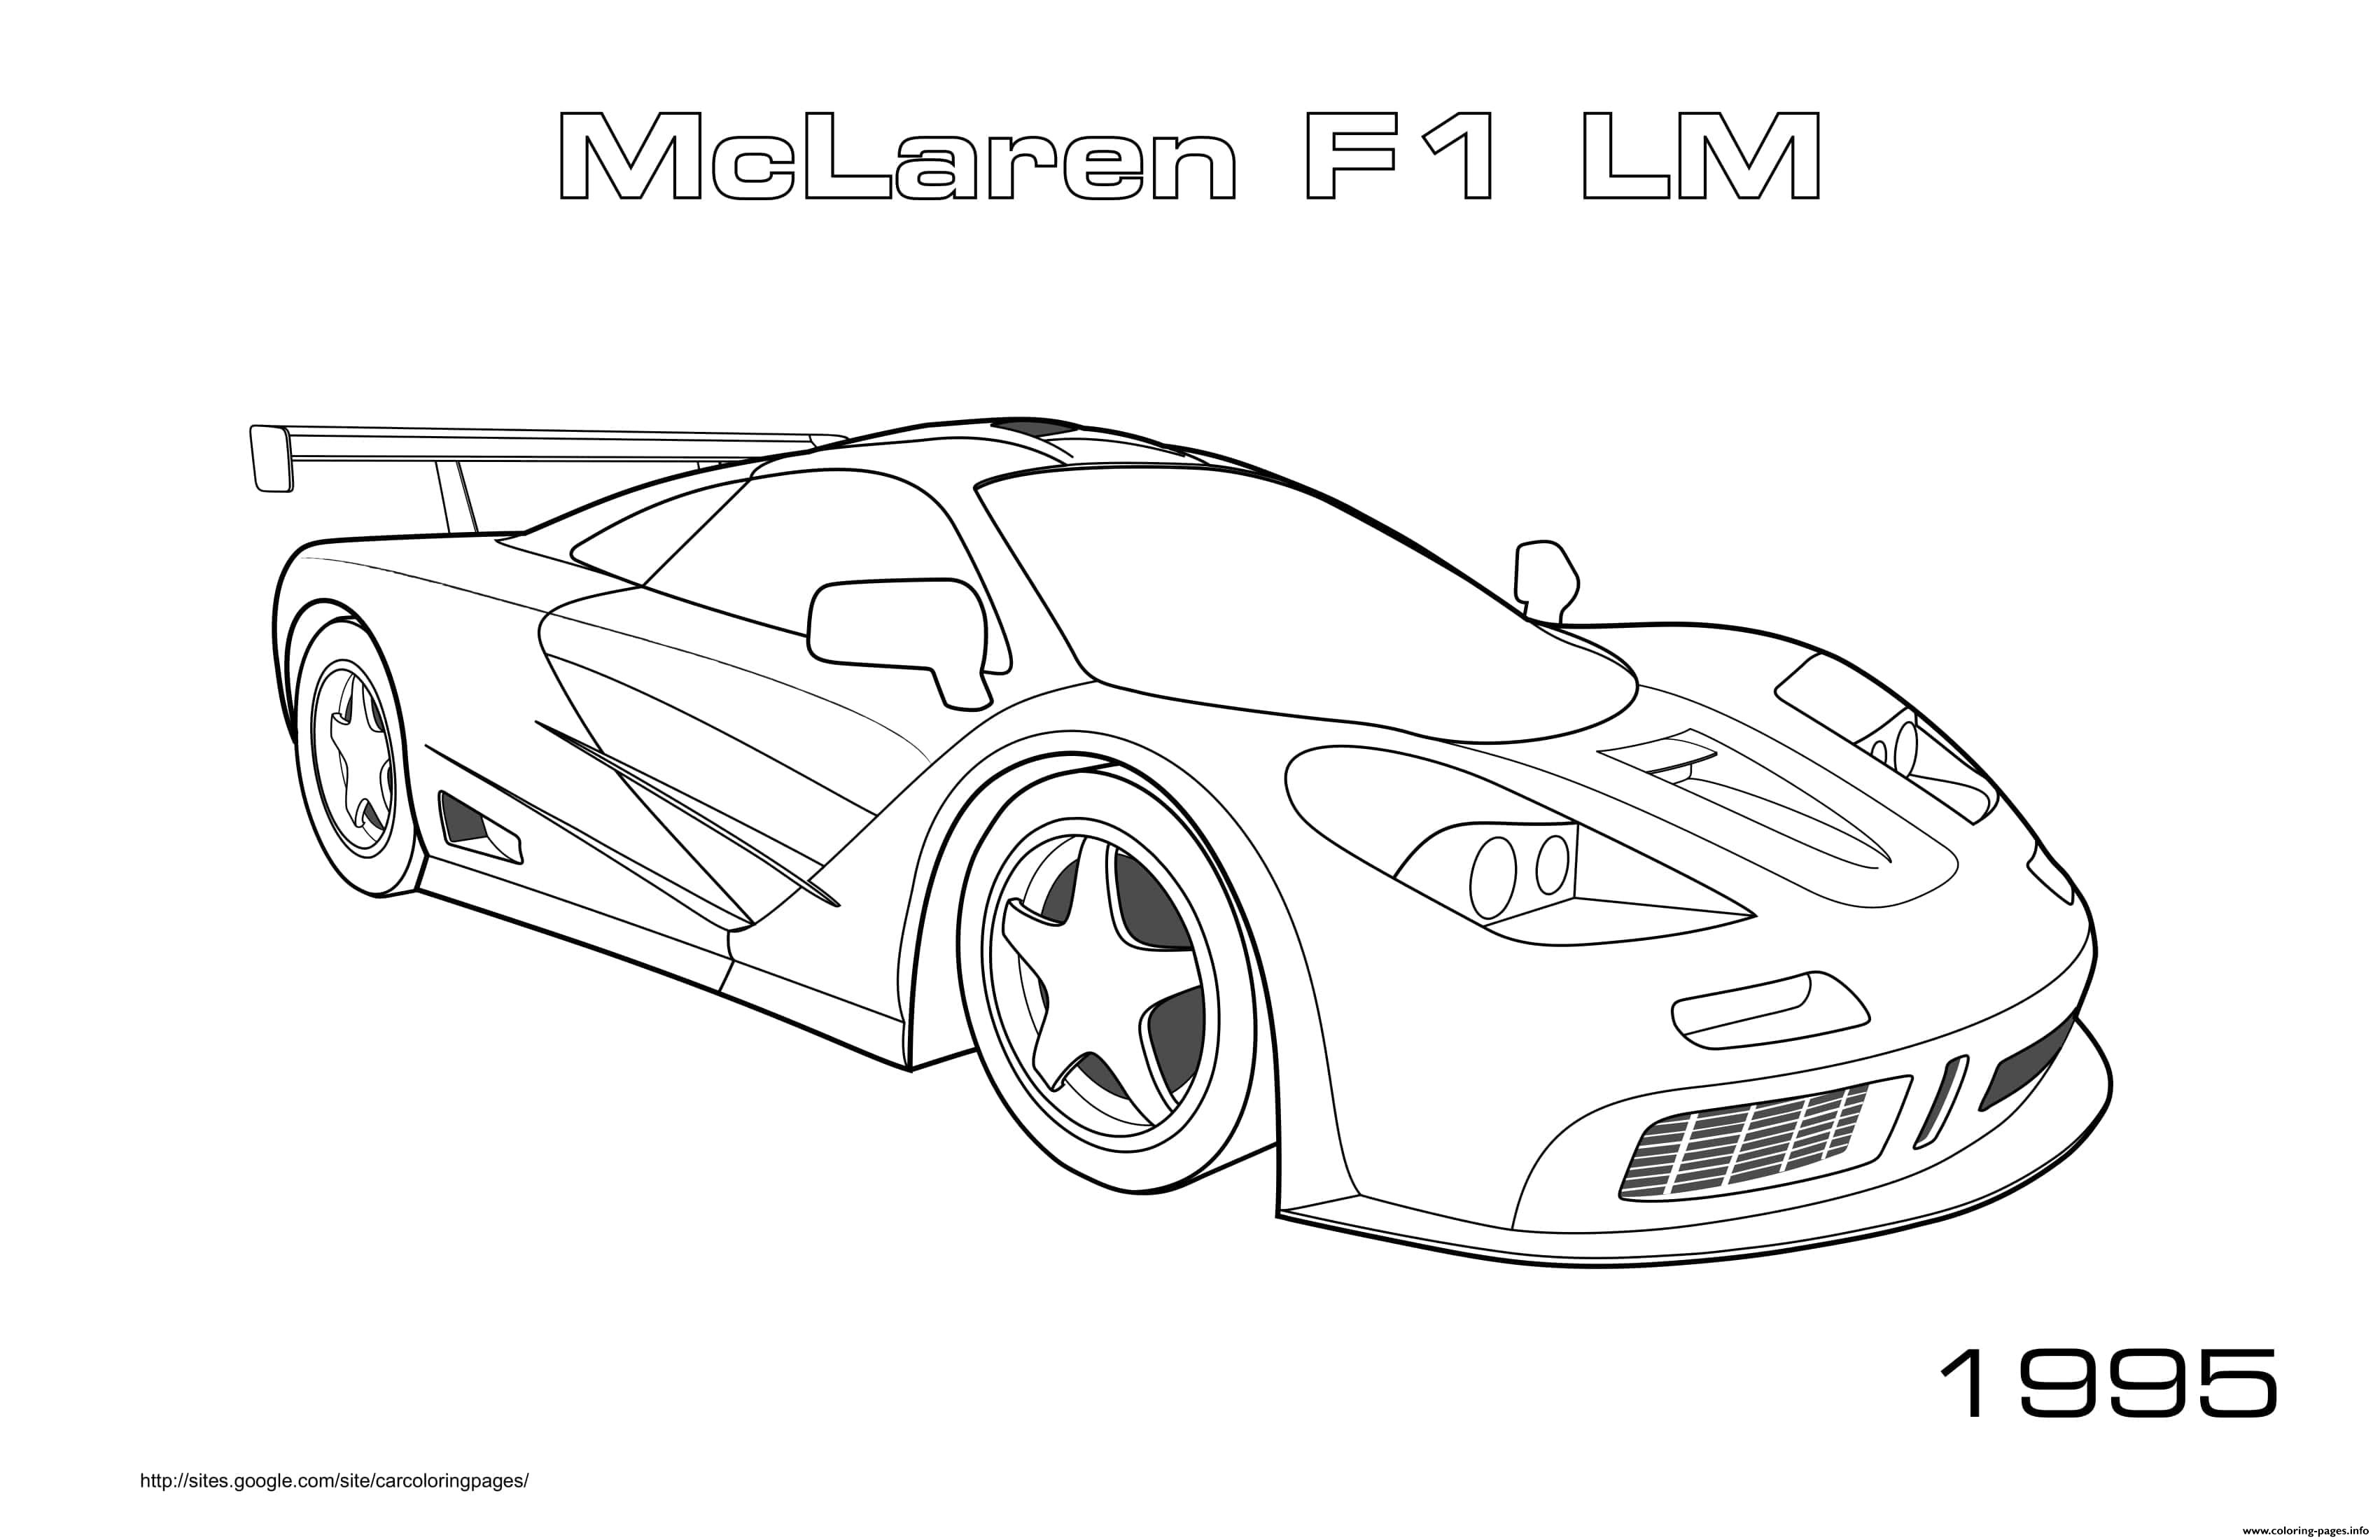 Mclaren F1 Lm 1995 coloring